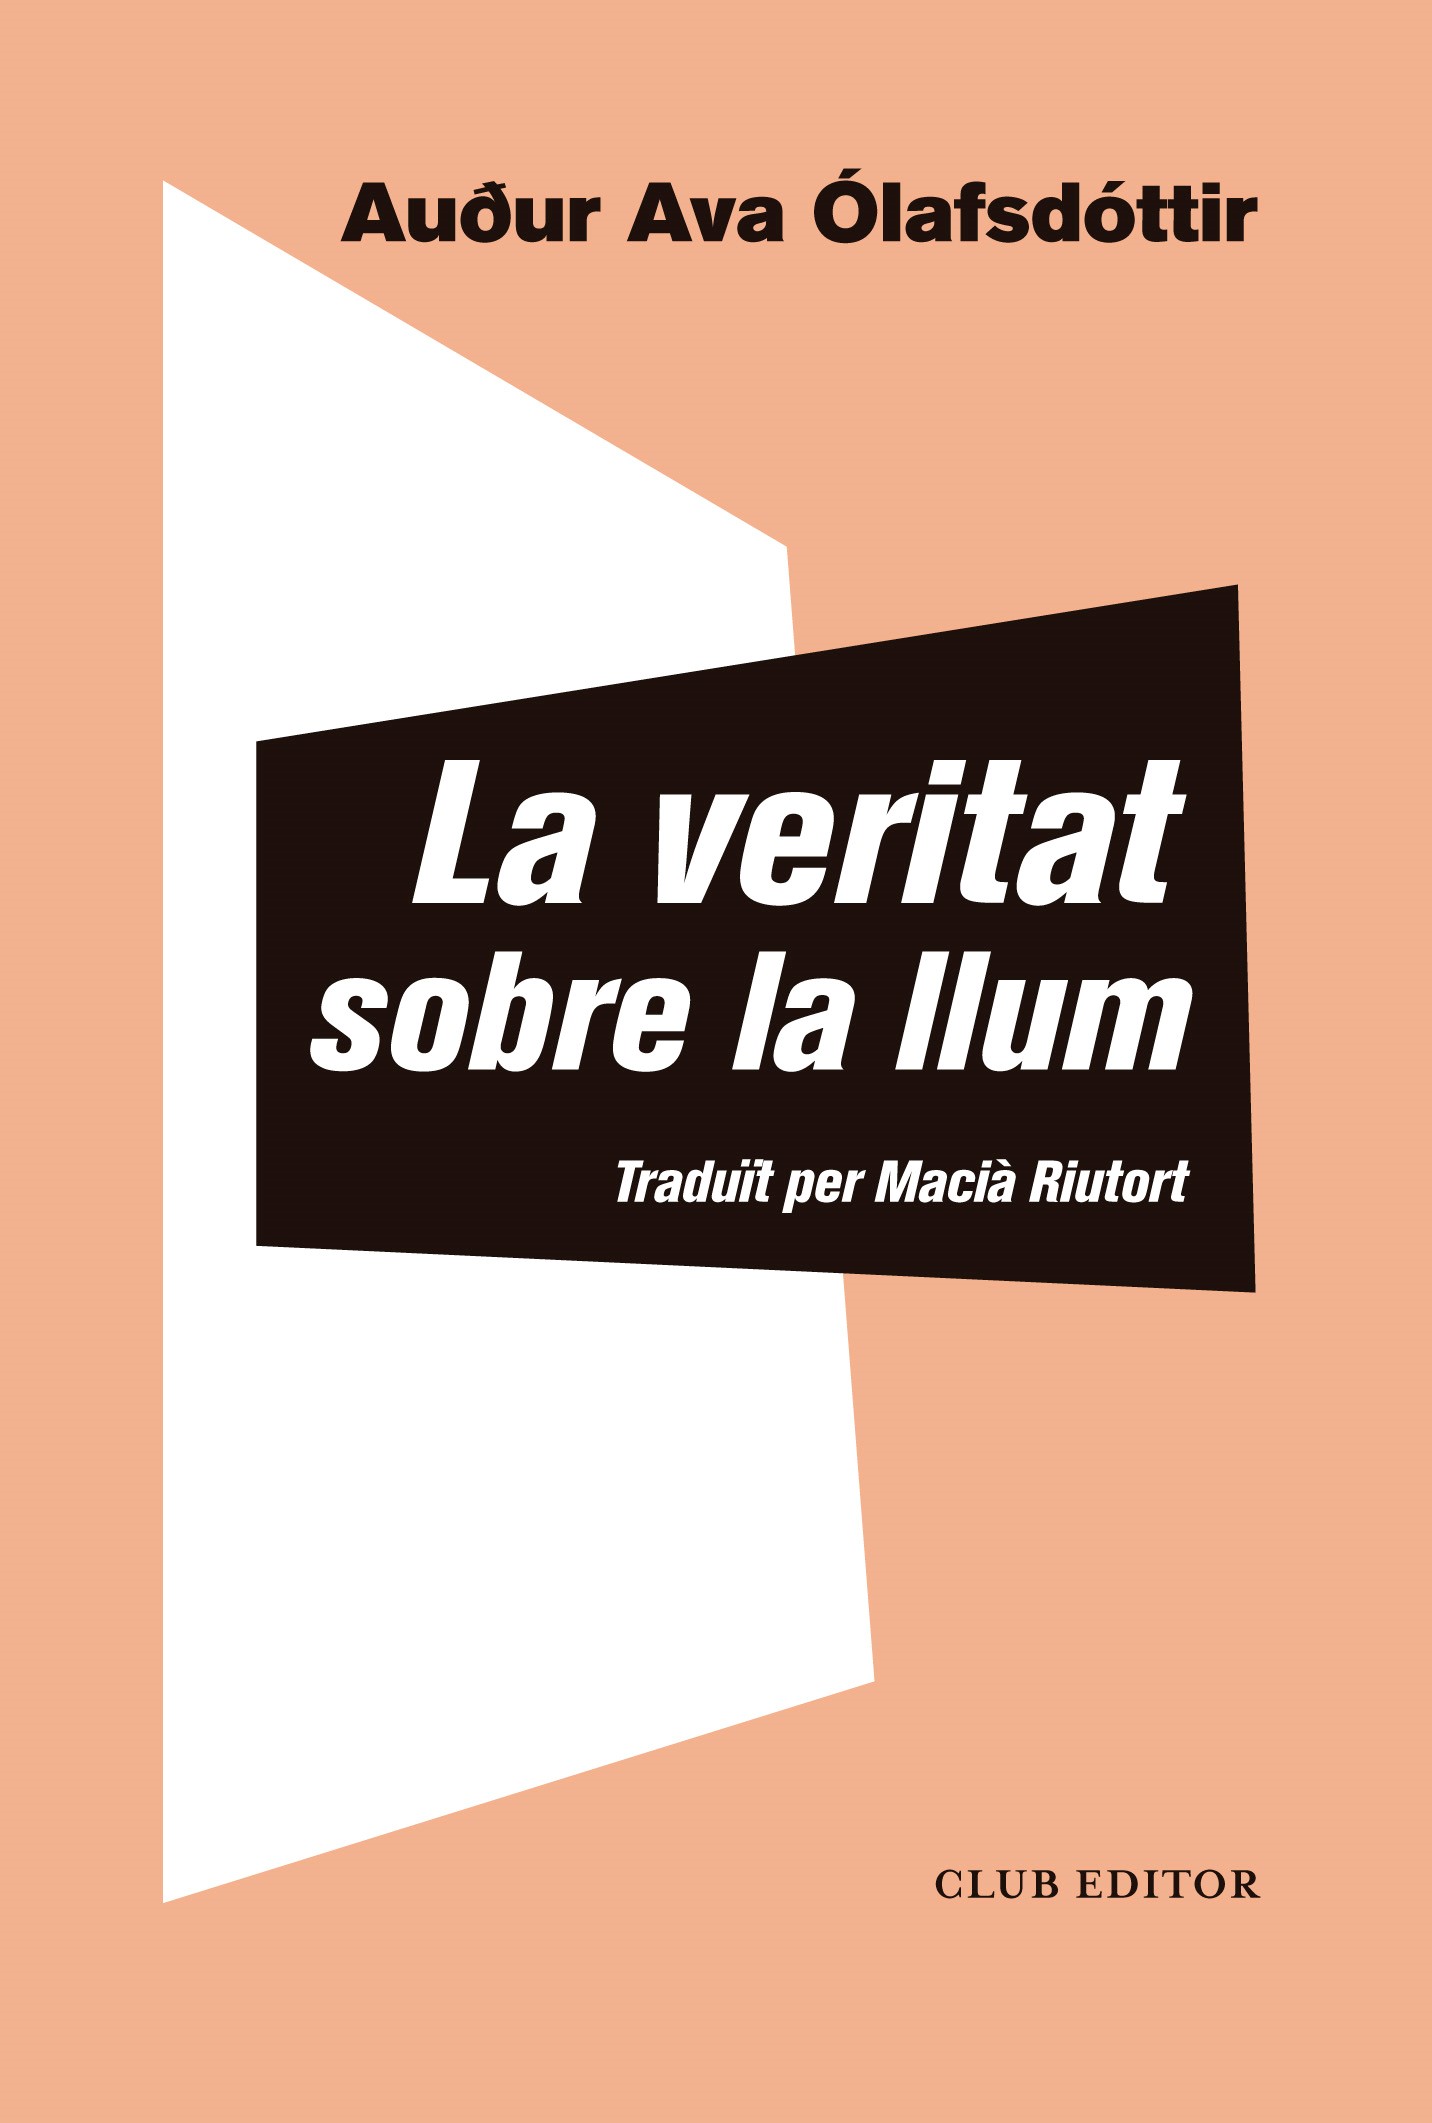 La Veritat sobre la llum (català language, 2022, Club Editor)